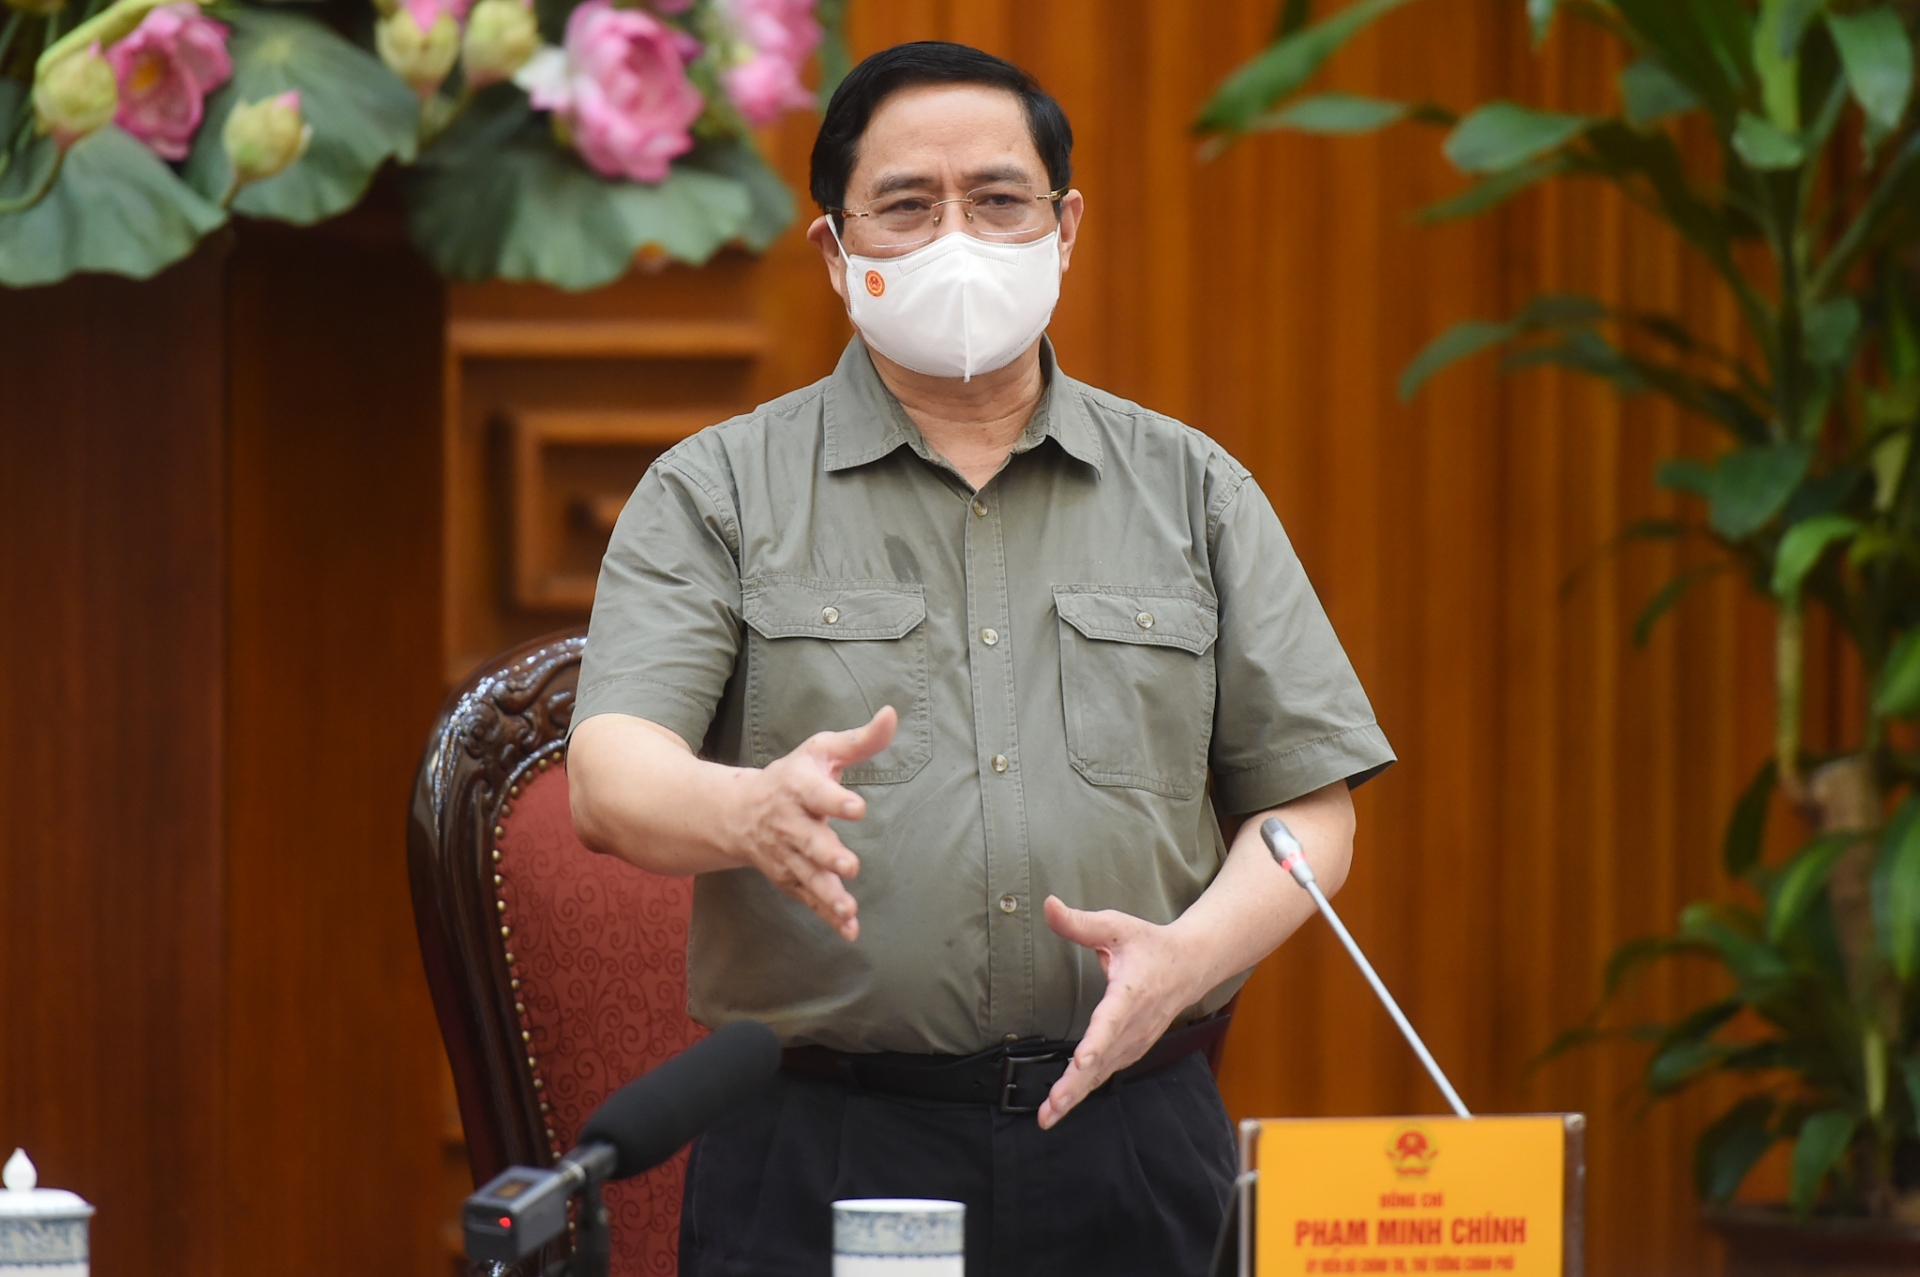 Thủ tướng Phạm Minh Chính: Nếu không xử lý nghiêm minh, sẽ tiếp tục dẫn tới tâm lý chủ quan, lơ là, mất cảnh giác, có thể dẫn đến hậu quả khó lường